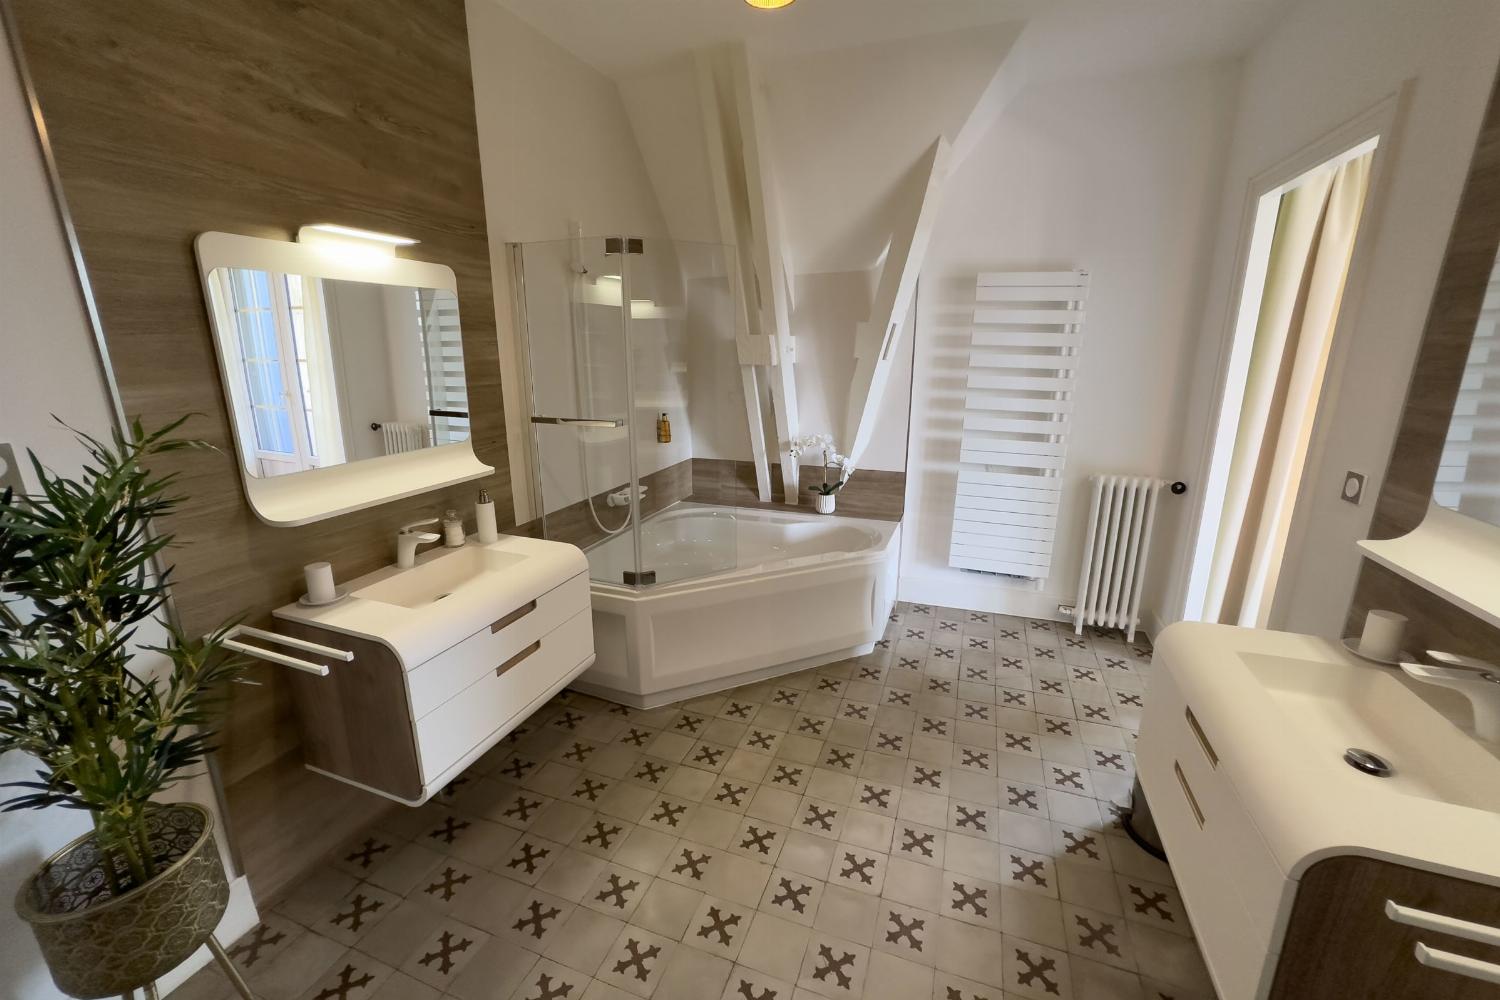 Salle de bain | Château de vacances dans le sud de la France